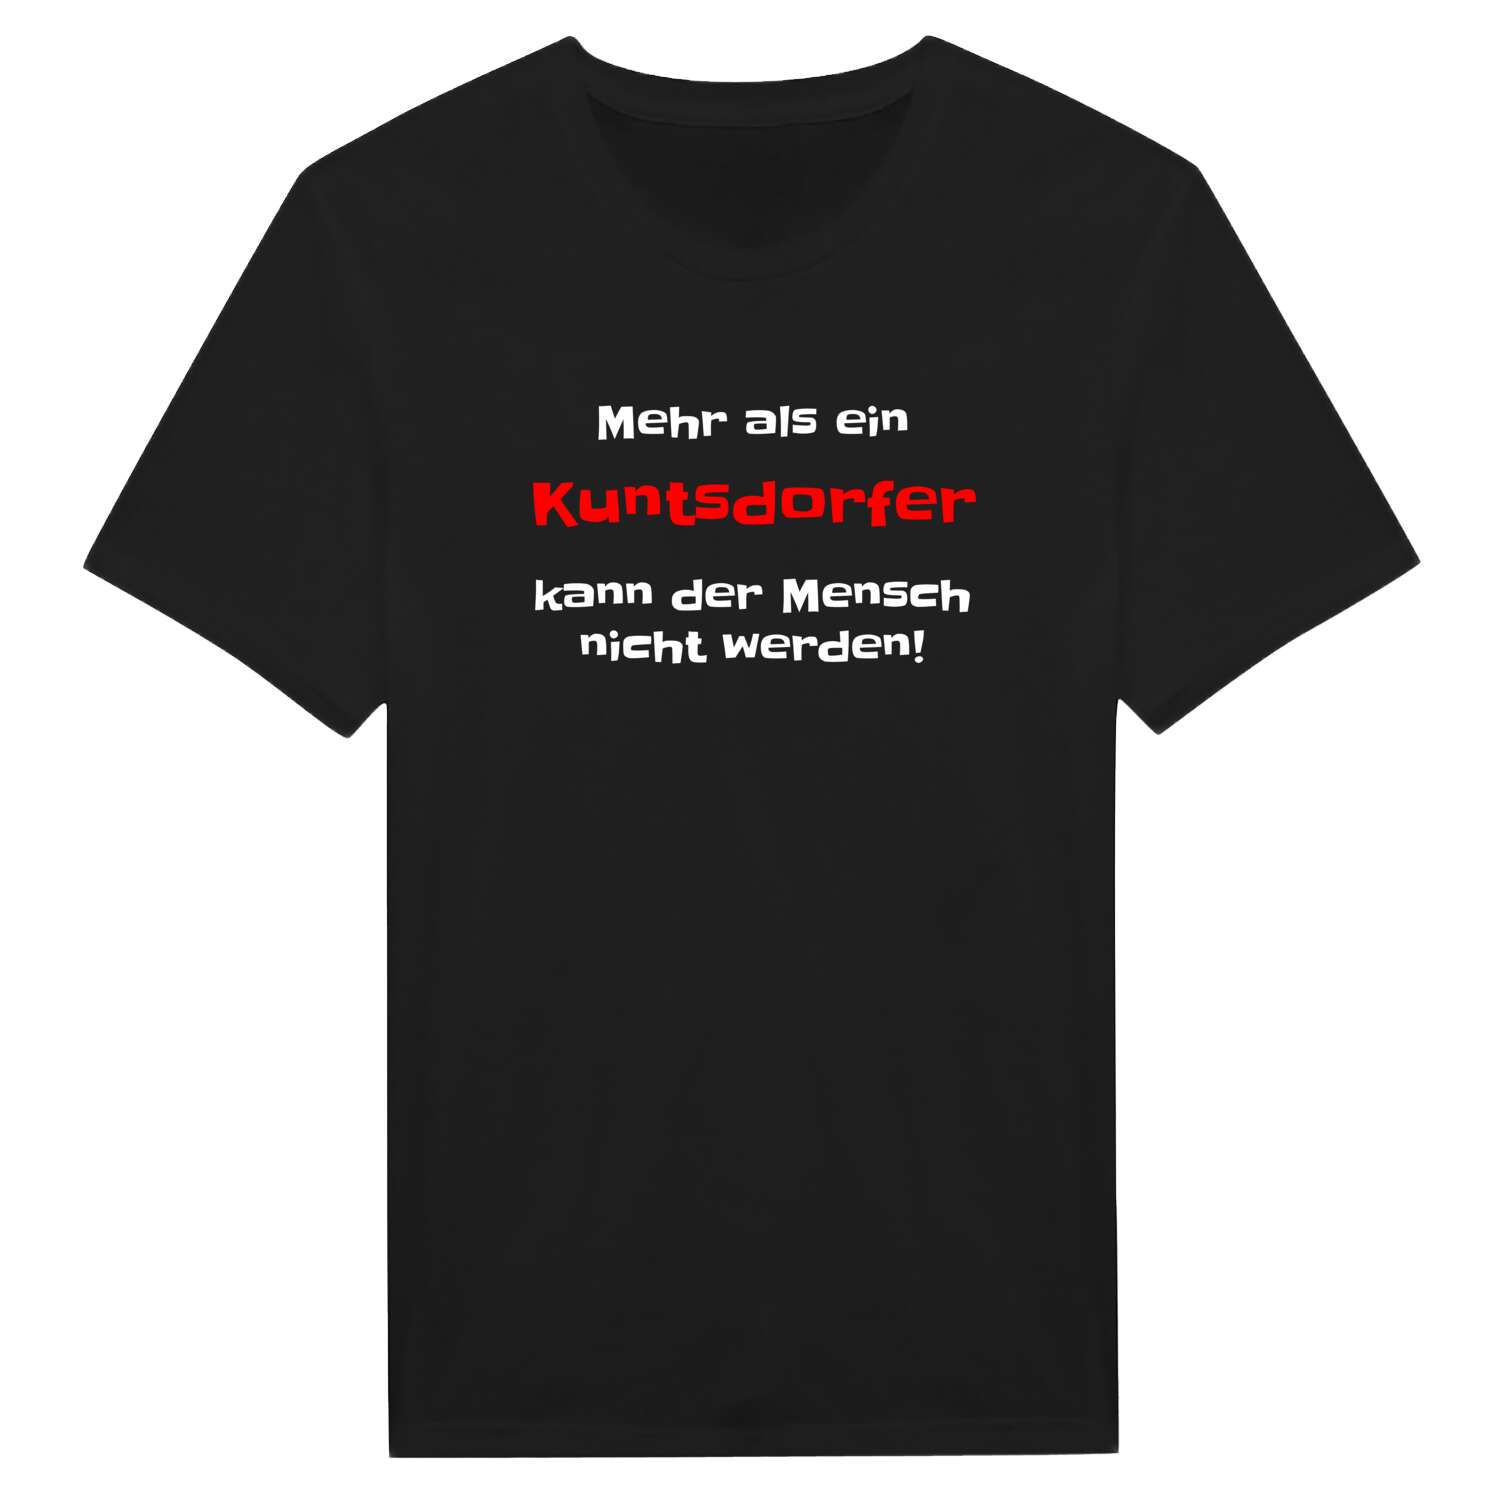 Kuntsdorf T-Shirt »Mehr als ein«